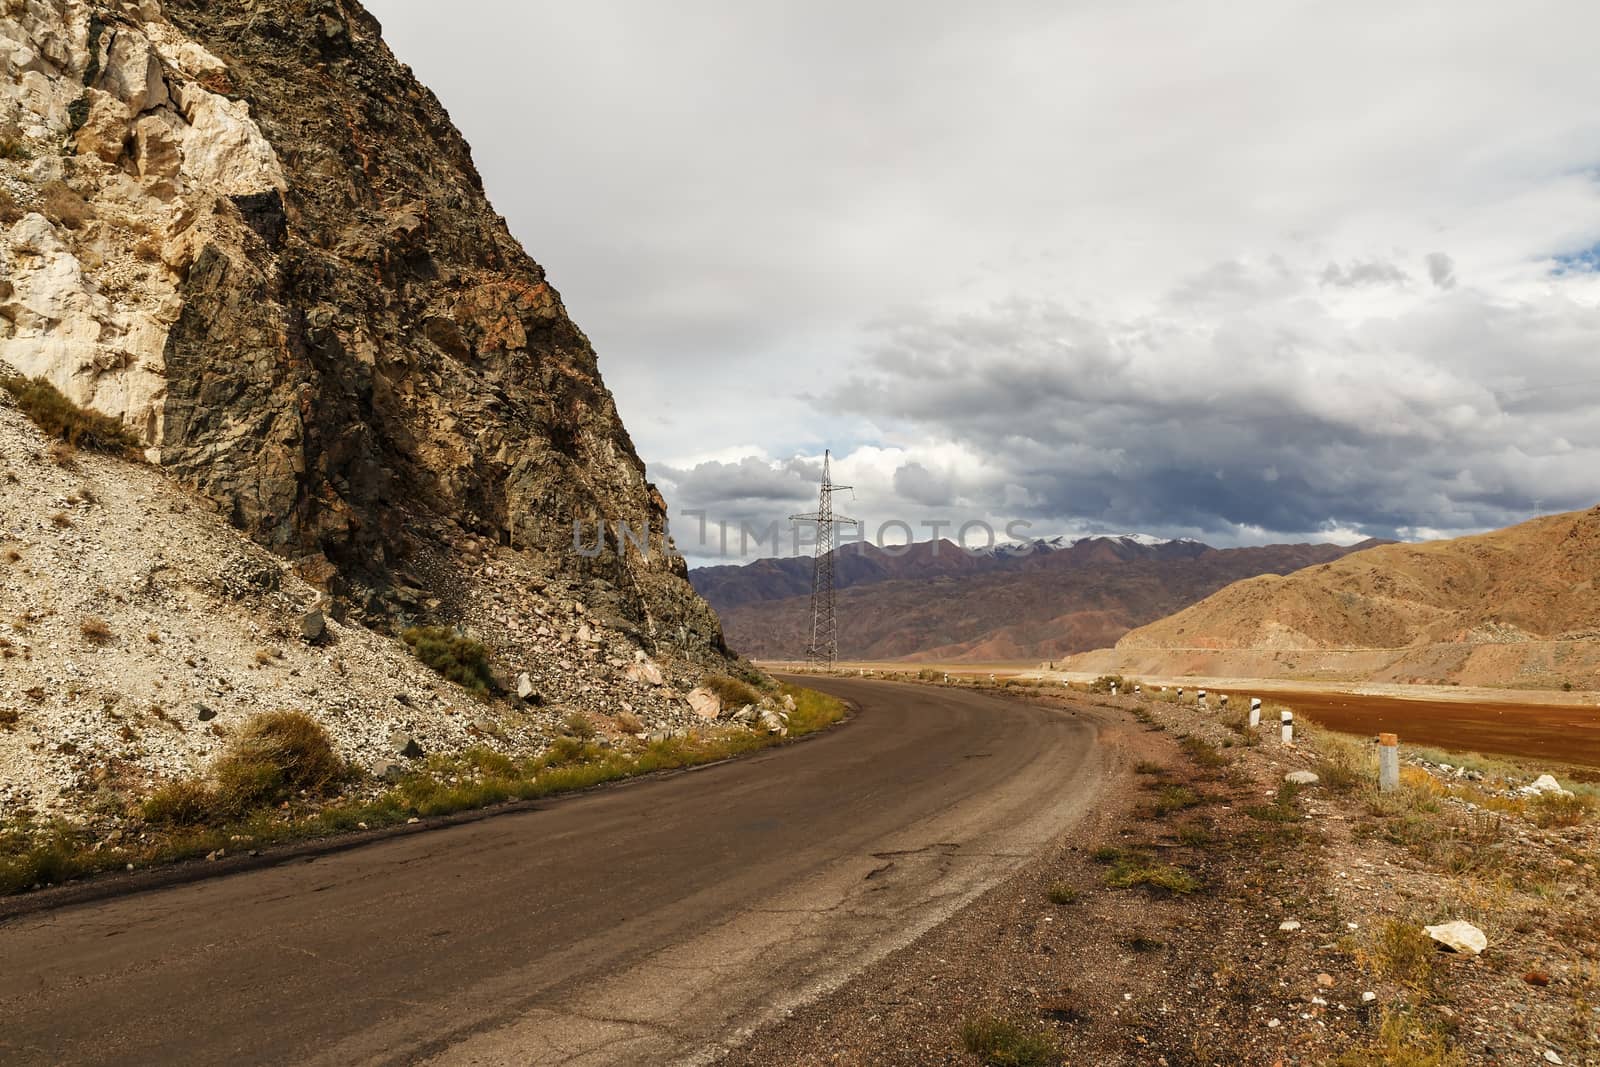 A365 highway, mountain road along the Chu River, Kyrgyzstan, Kochkor District